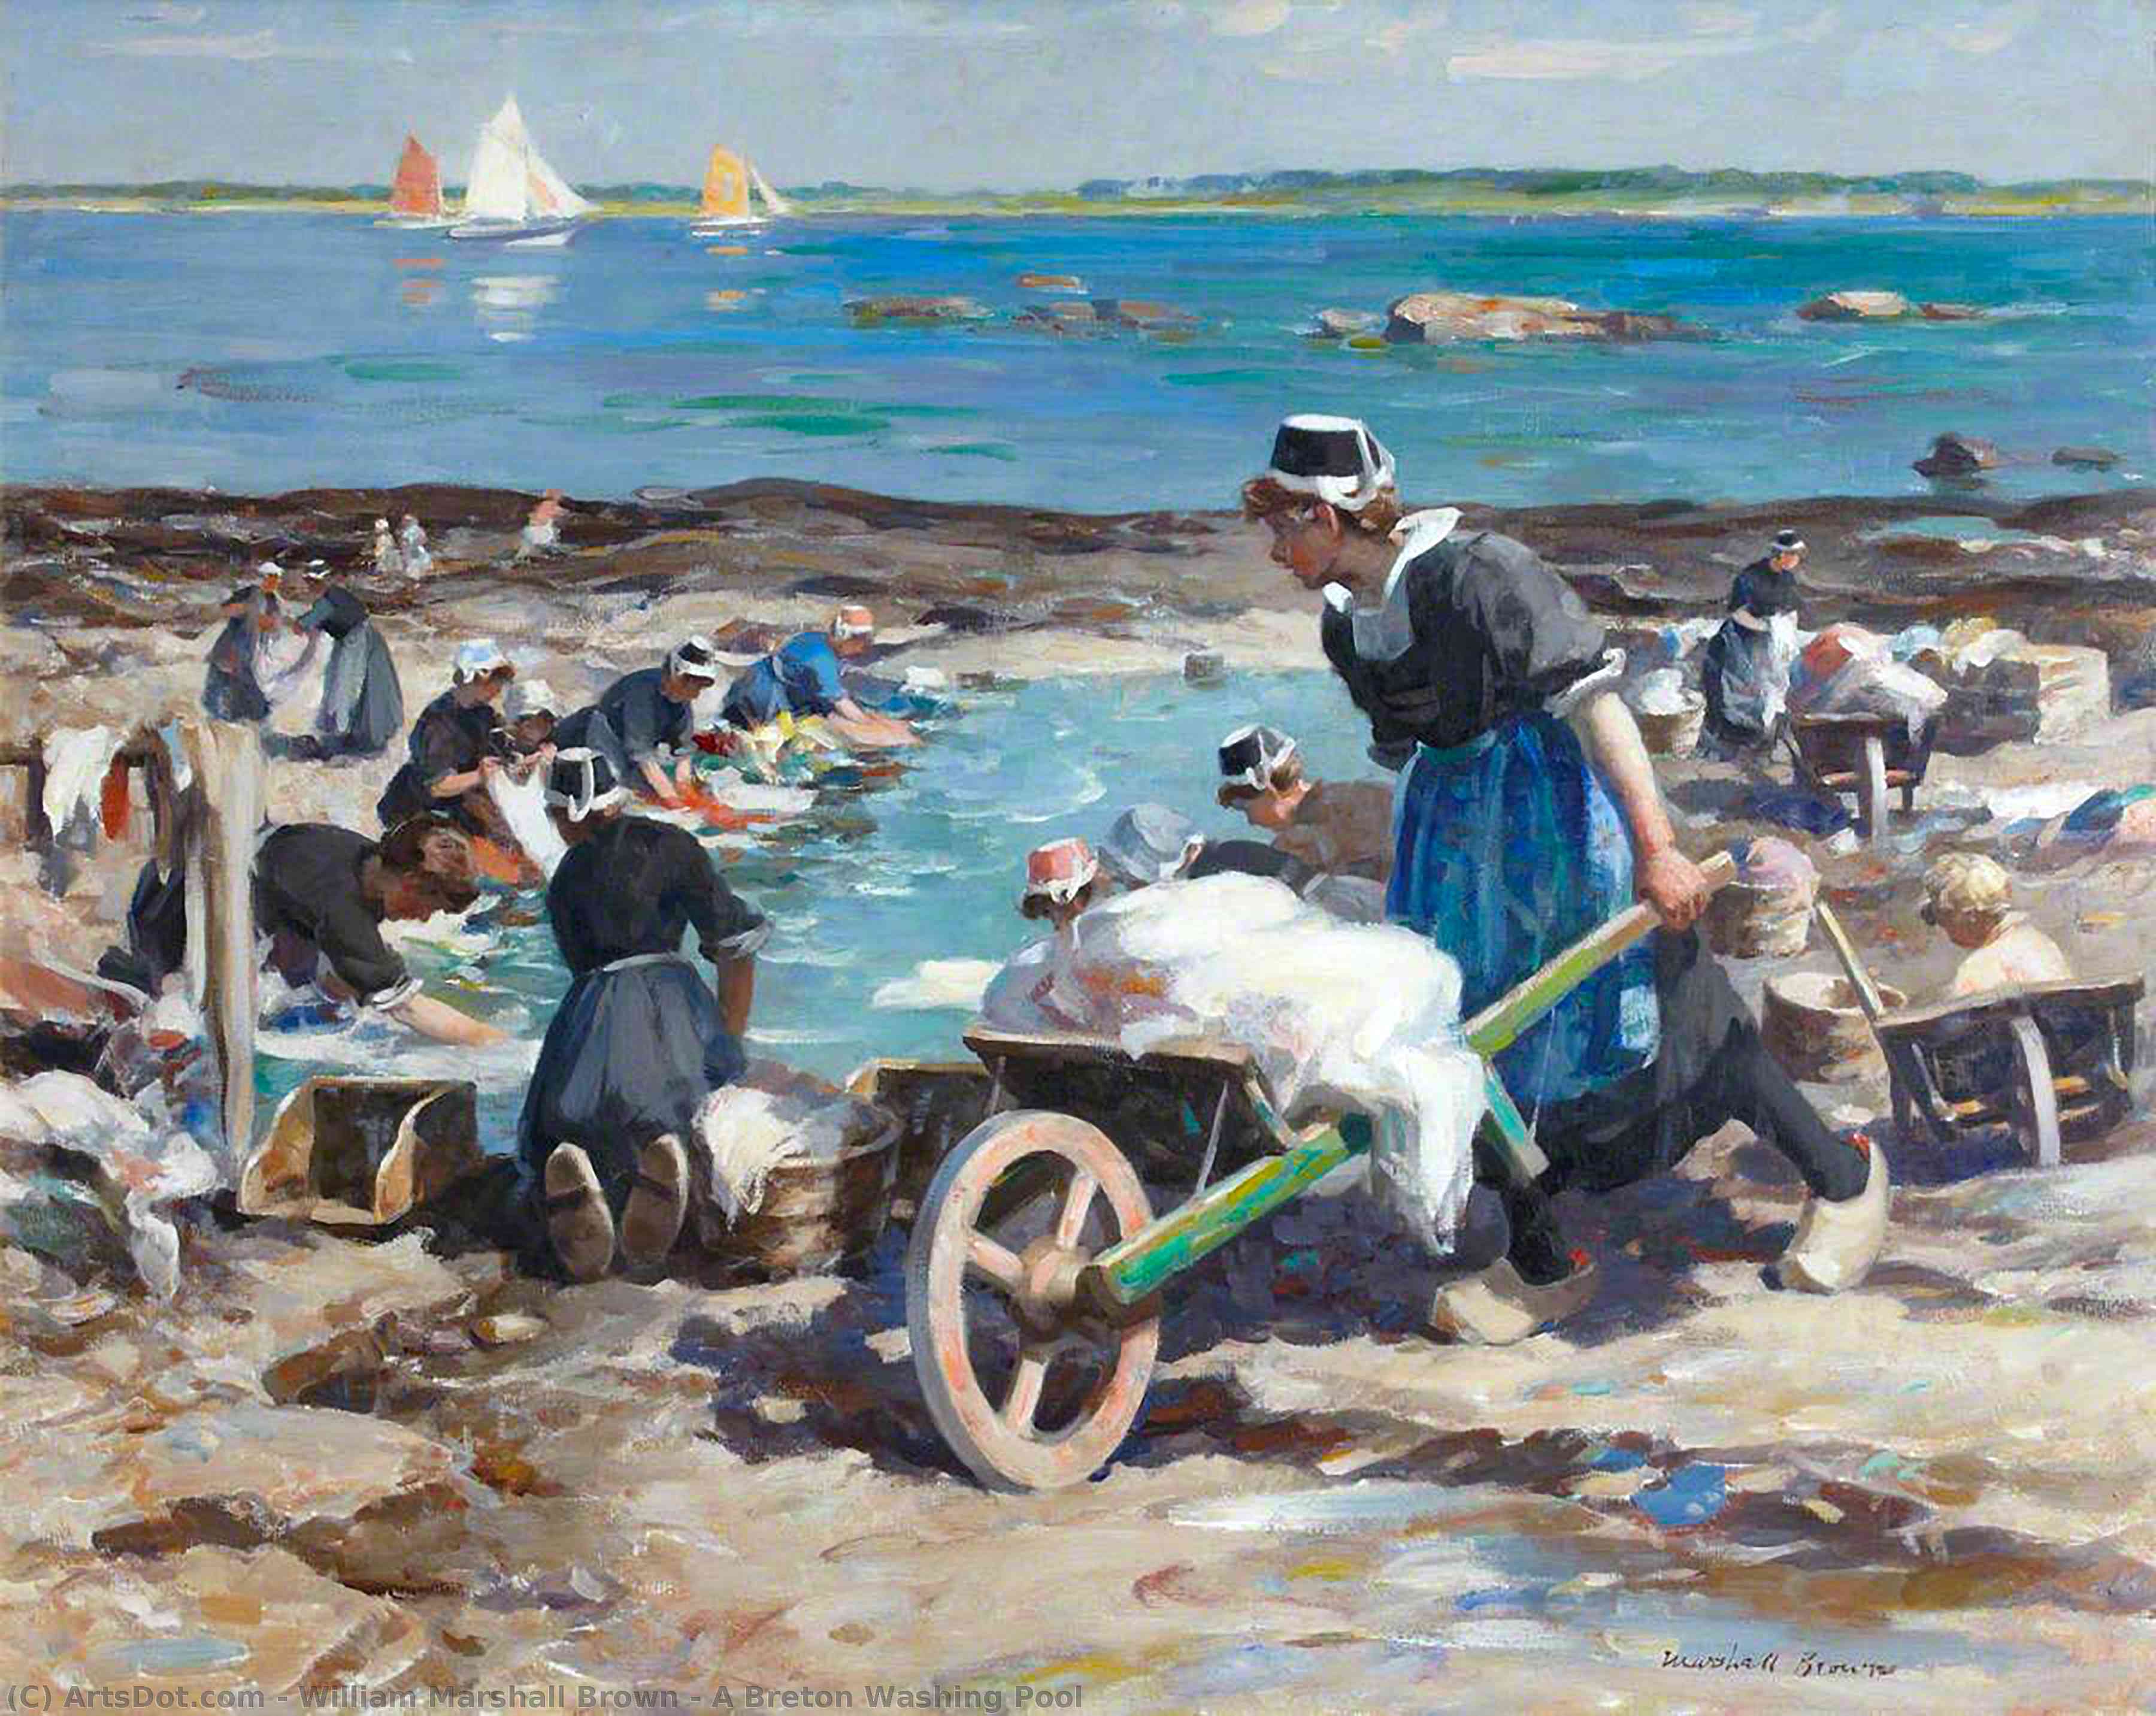 Achat Reproductions D'art Une piscine de lavage bretonne, 1930 de William Marshall Brown (1863-1936) | ArtsDot.com